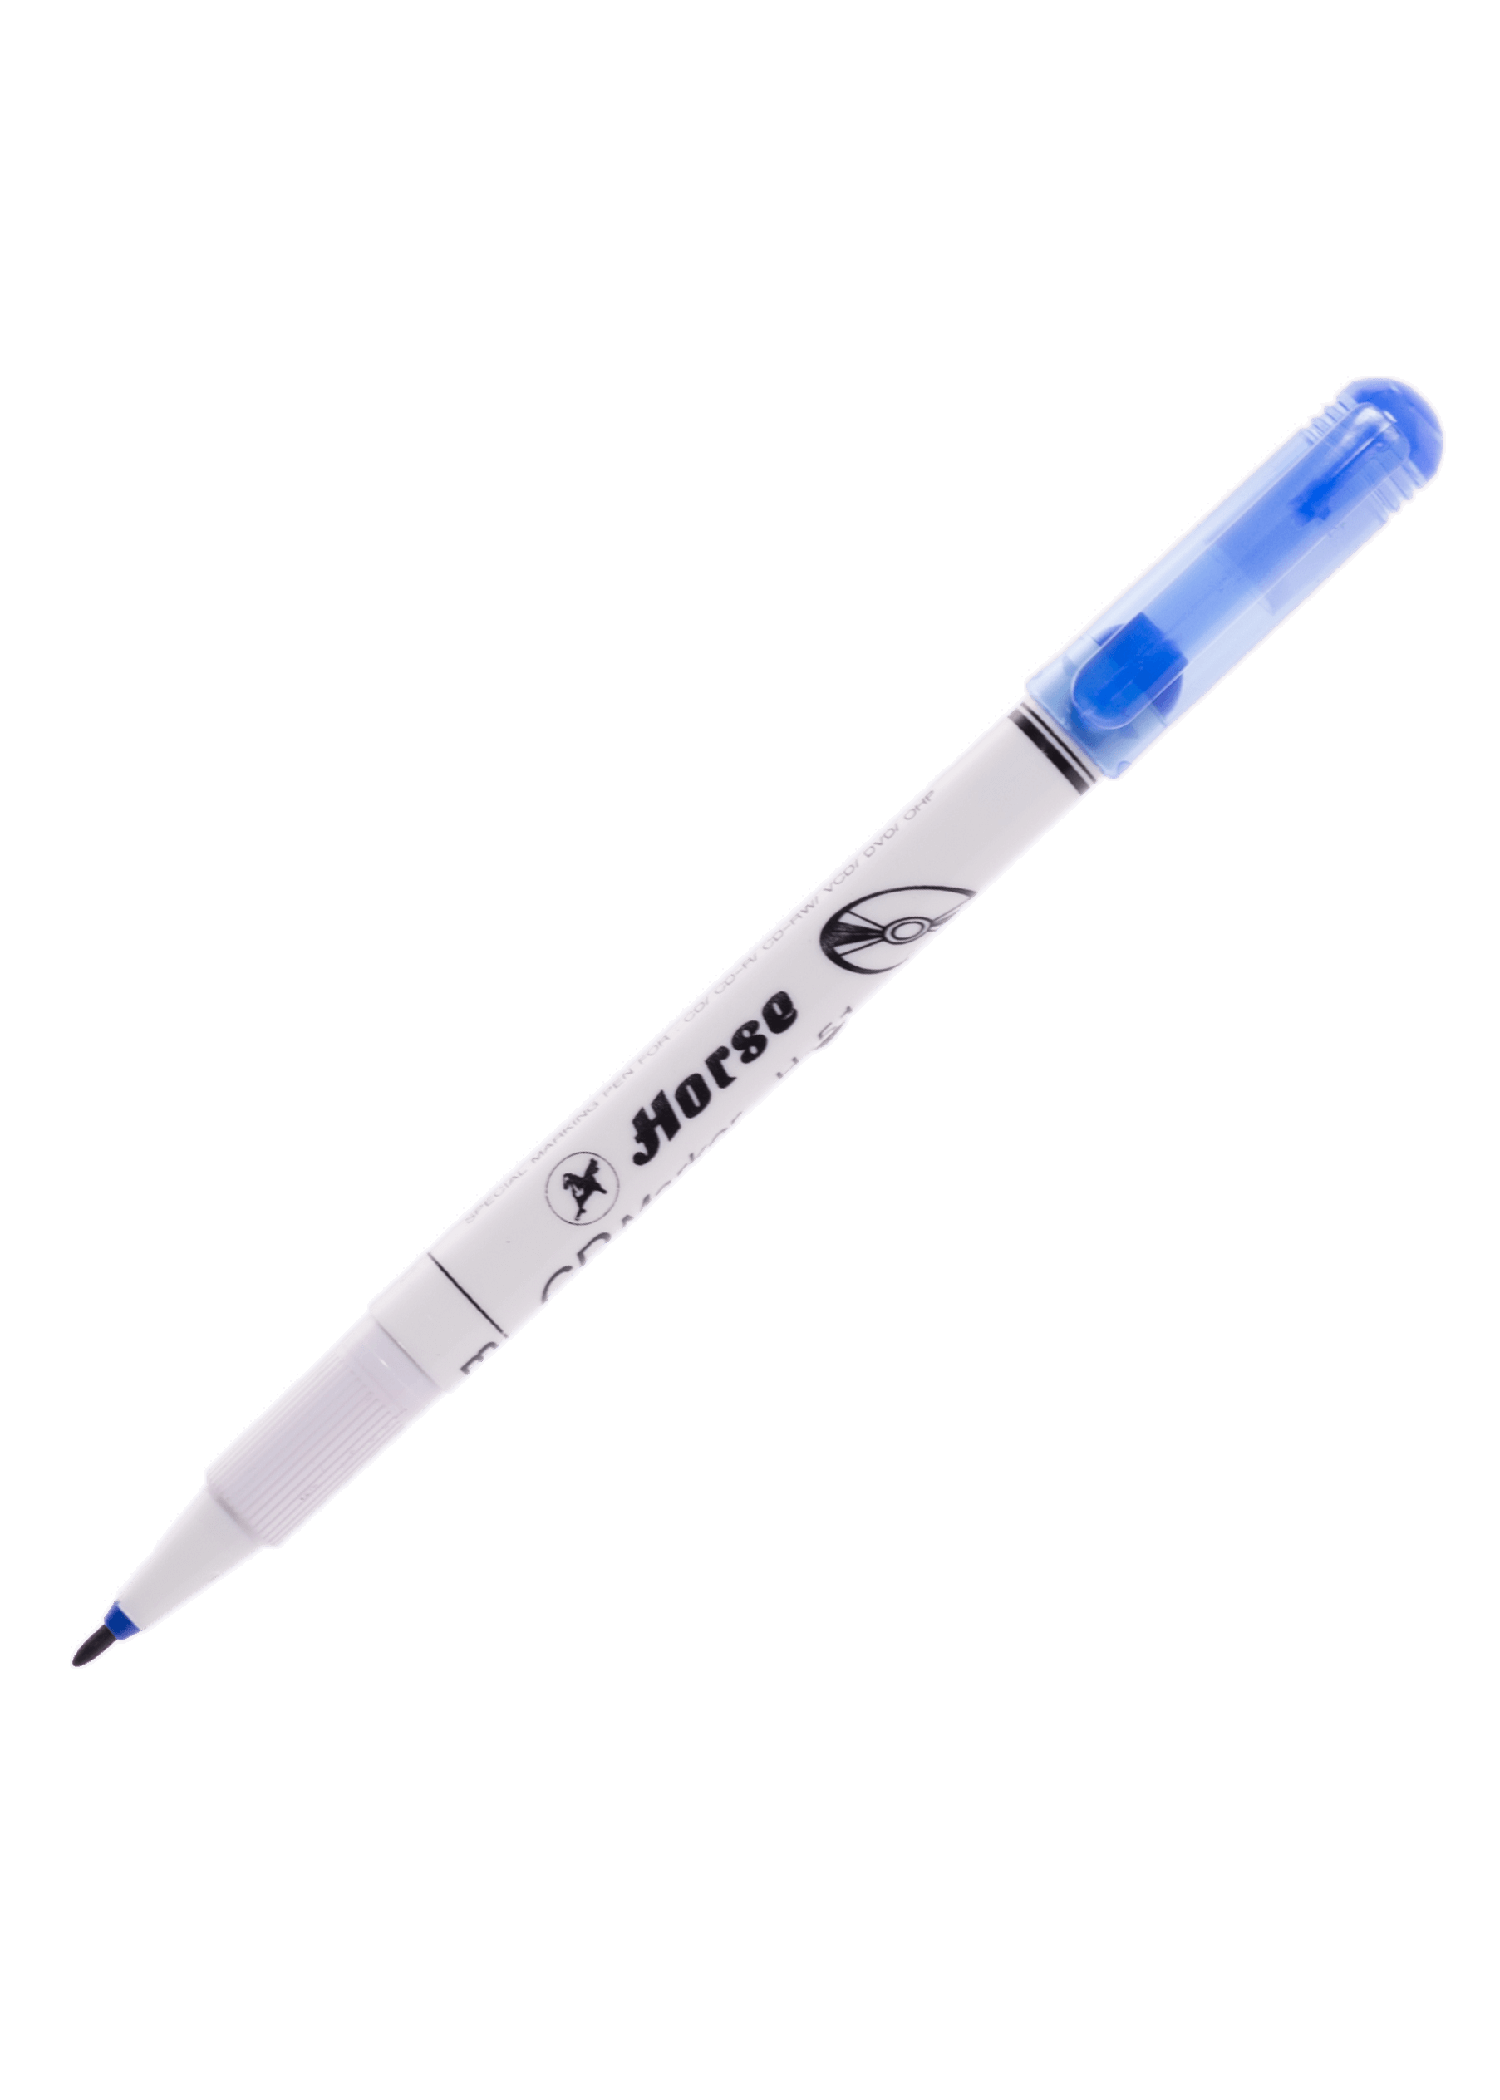 ปากกาเขียน CD ลบได้ ตราม้า H-51 (M) สีน้ำเงิน 1.0 มม.